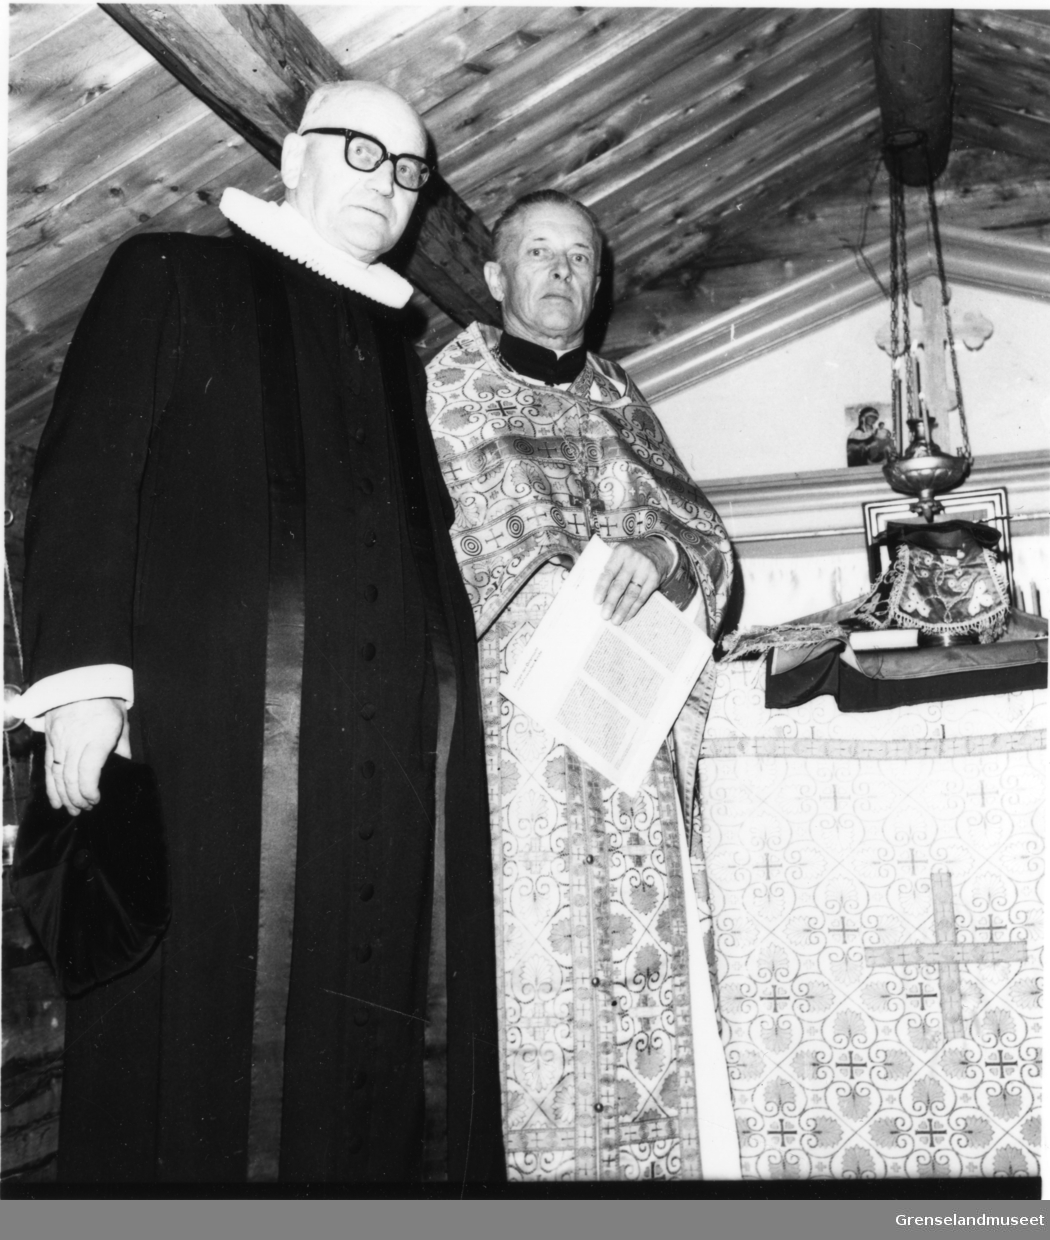 Ortodoks prest Yrjö Räme og Luthersk prest Ernst Galschødt i St. Georgs Kapel i Neiden.